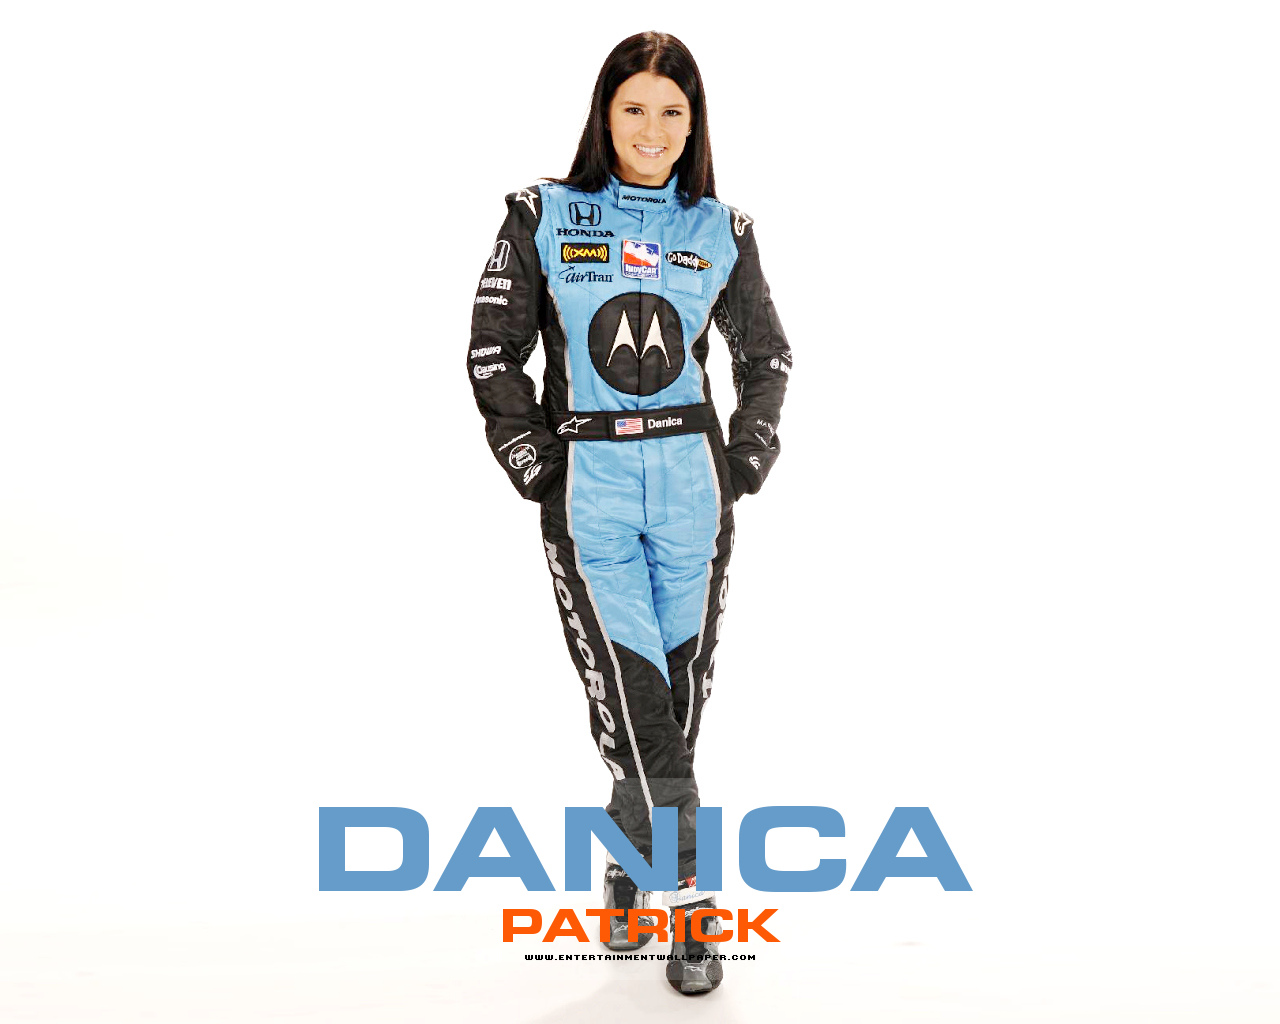 Danika Patrick